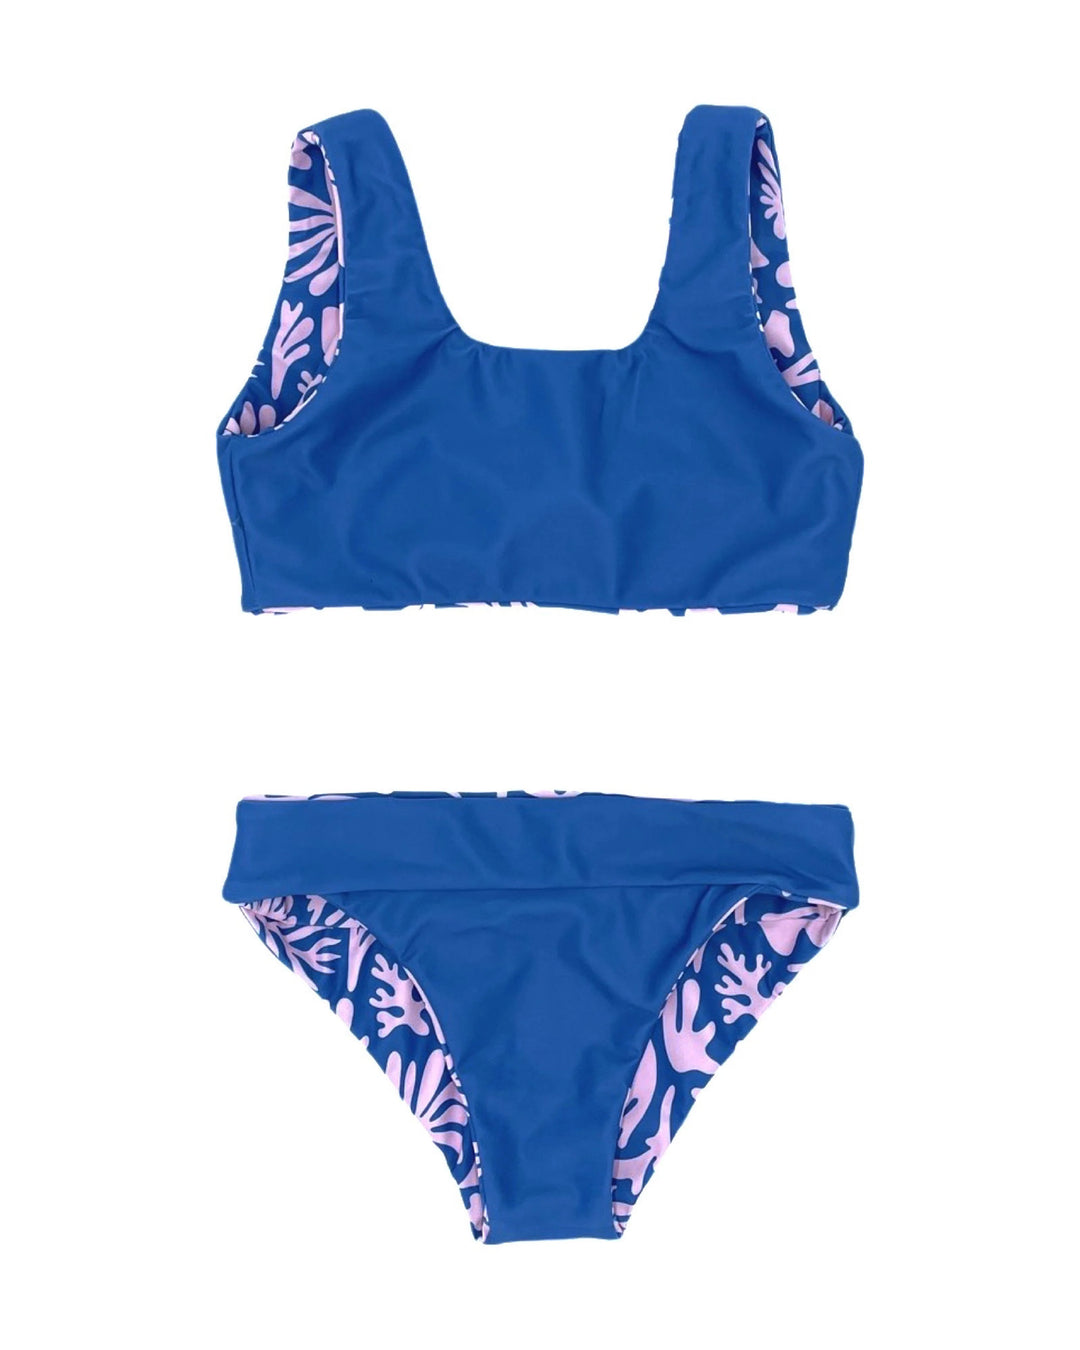 The Girls Island Hopper Blue & Pink Bikini